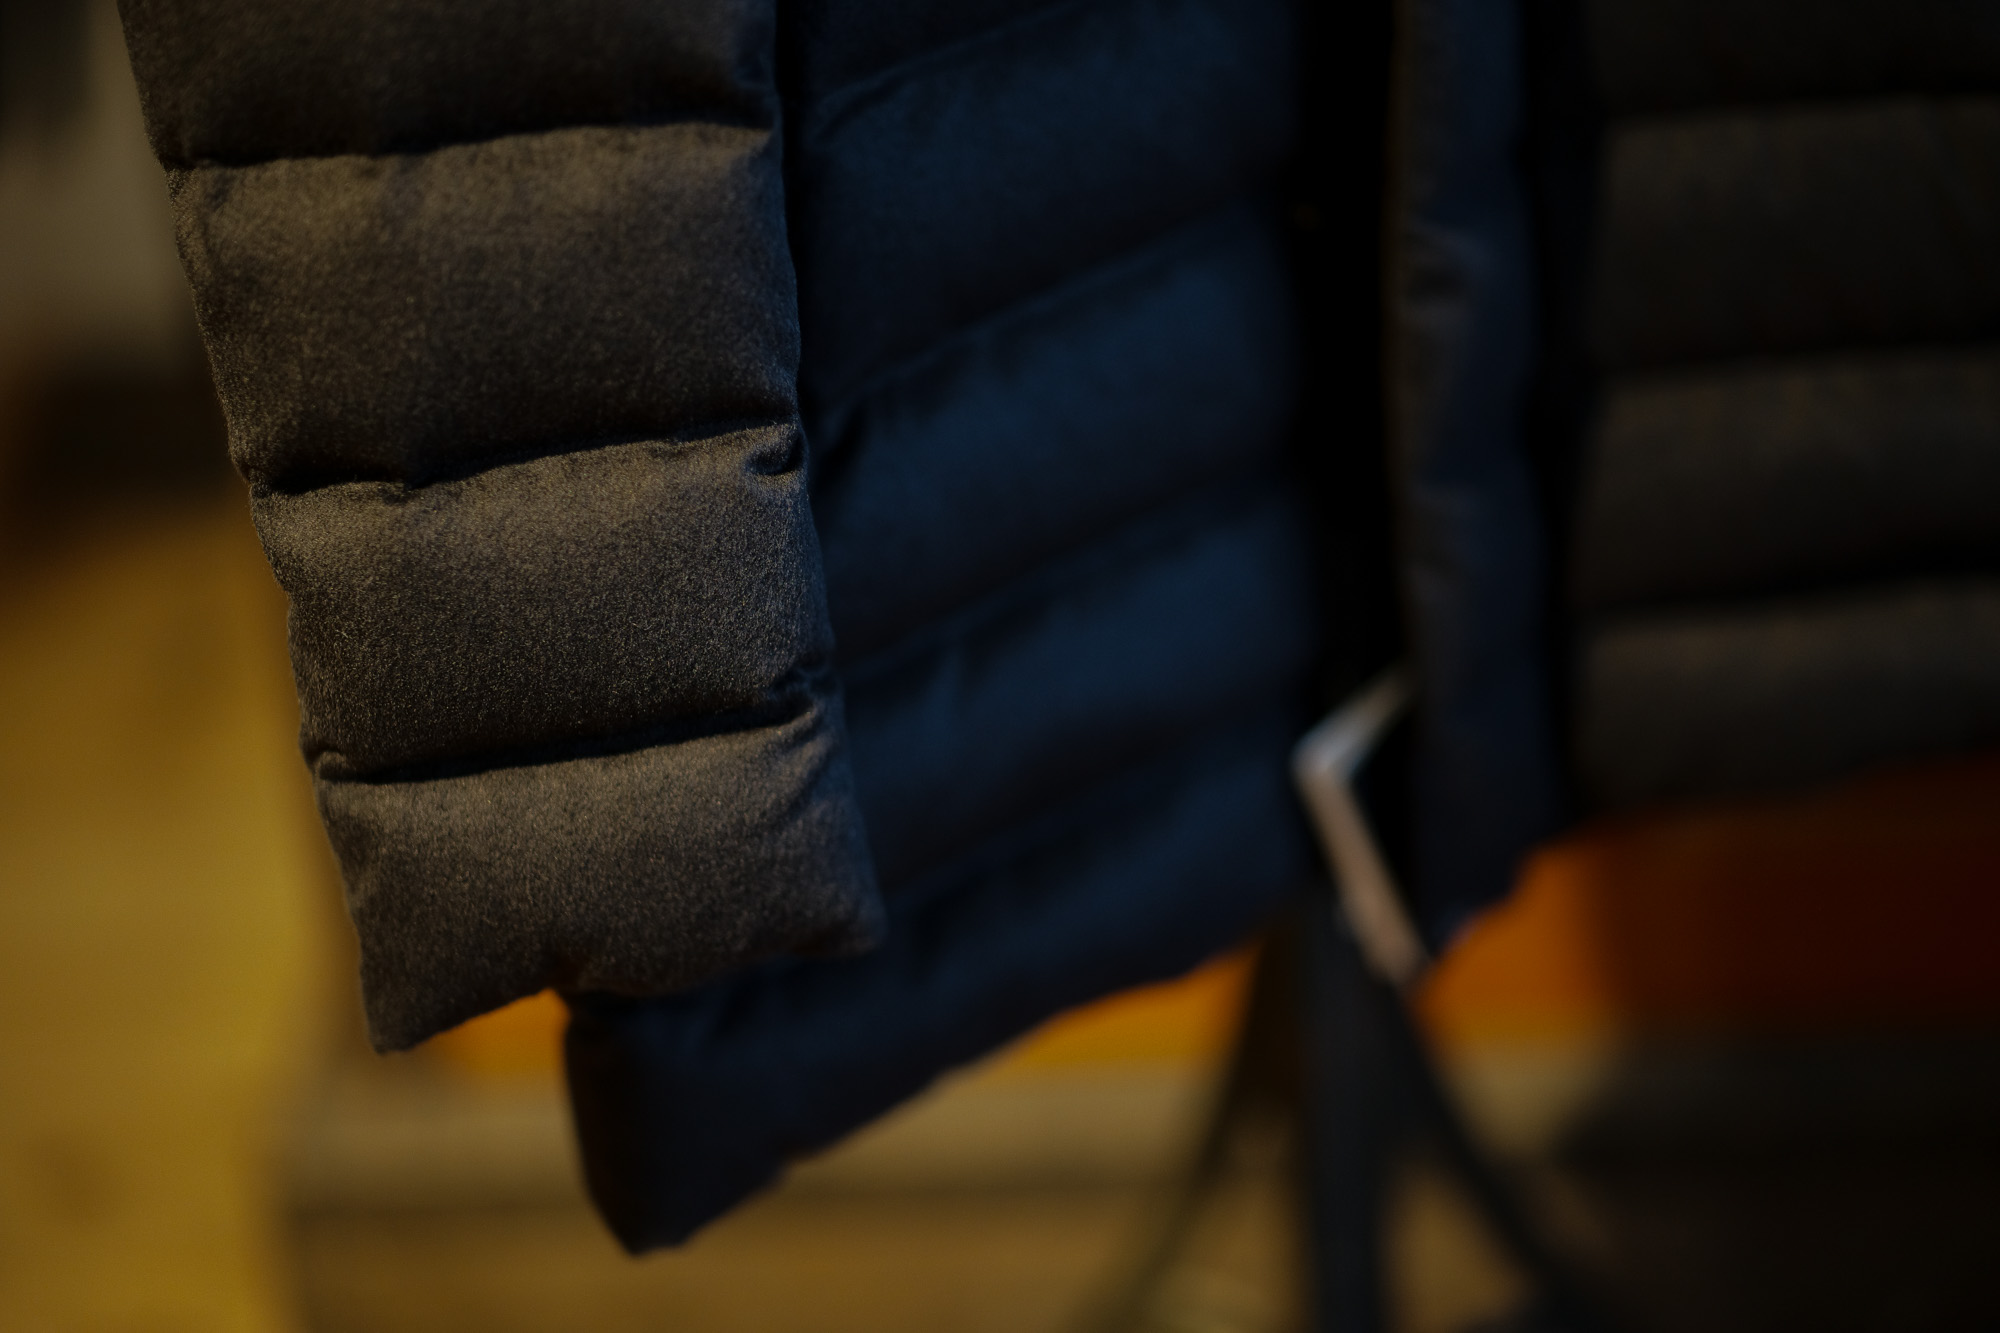 HERNO(ヘルノ) PI0584U Silk Cashmere Down coat (シルク カシミア ダウン コート) PIACENZA (ピアツェンツァ) DROP GLIDE NYLON ULTRALIGHT 撥水 シルク カシミア ダウン コート BLACK (ブラック・9300) Made in italy (イタリア製) 2019 秋冬新作 alto e dirittoアルトエデリット 42,44,46,48,50,52